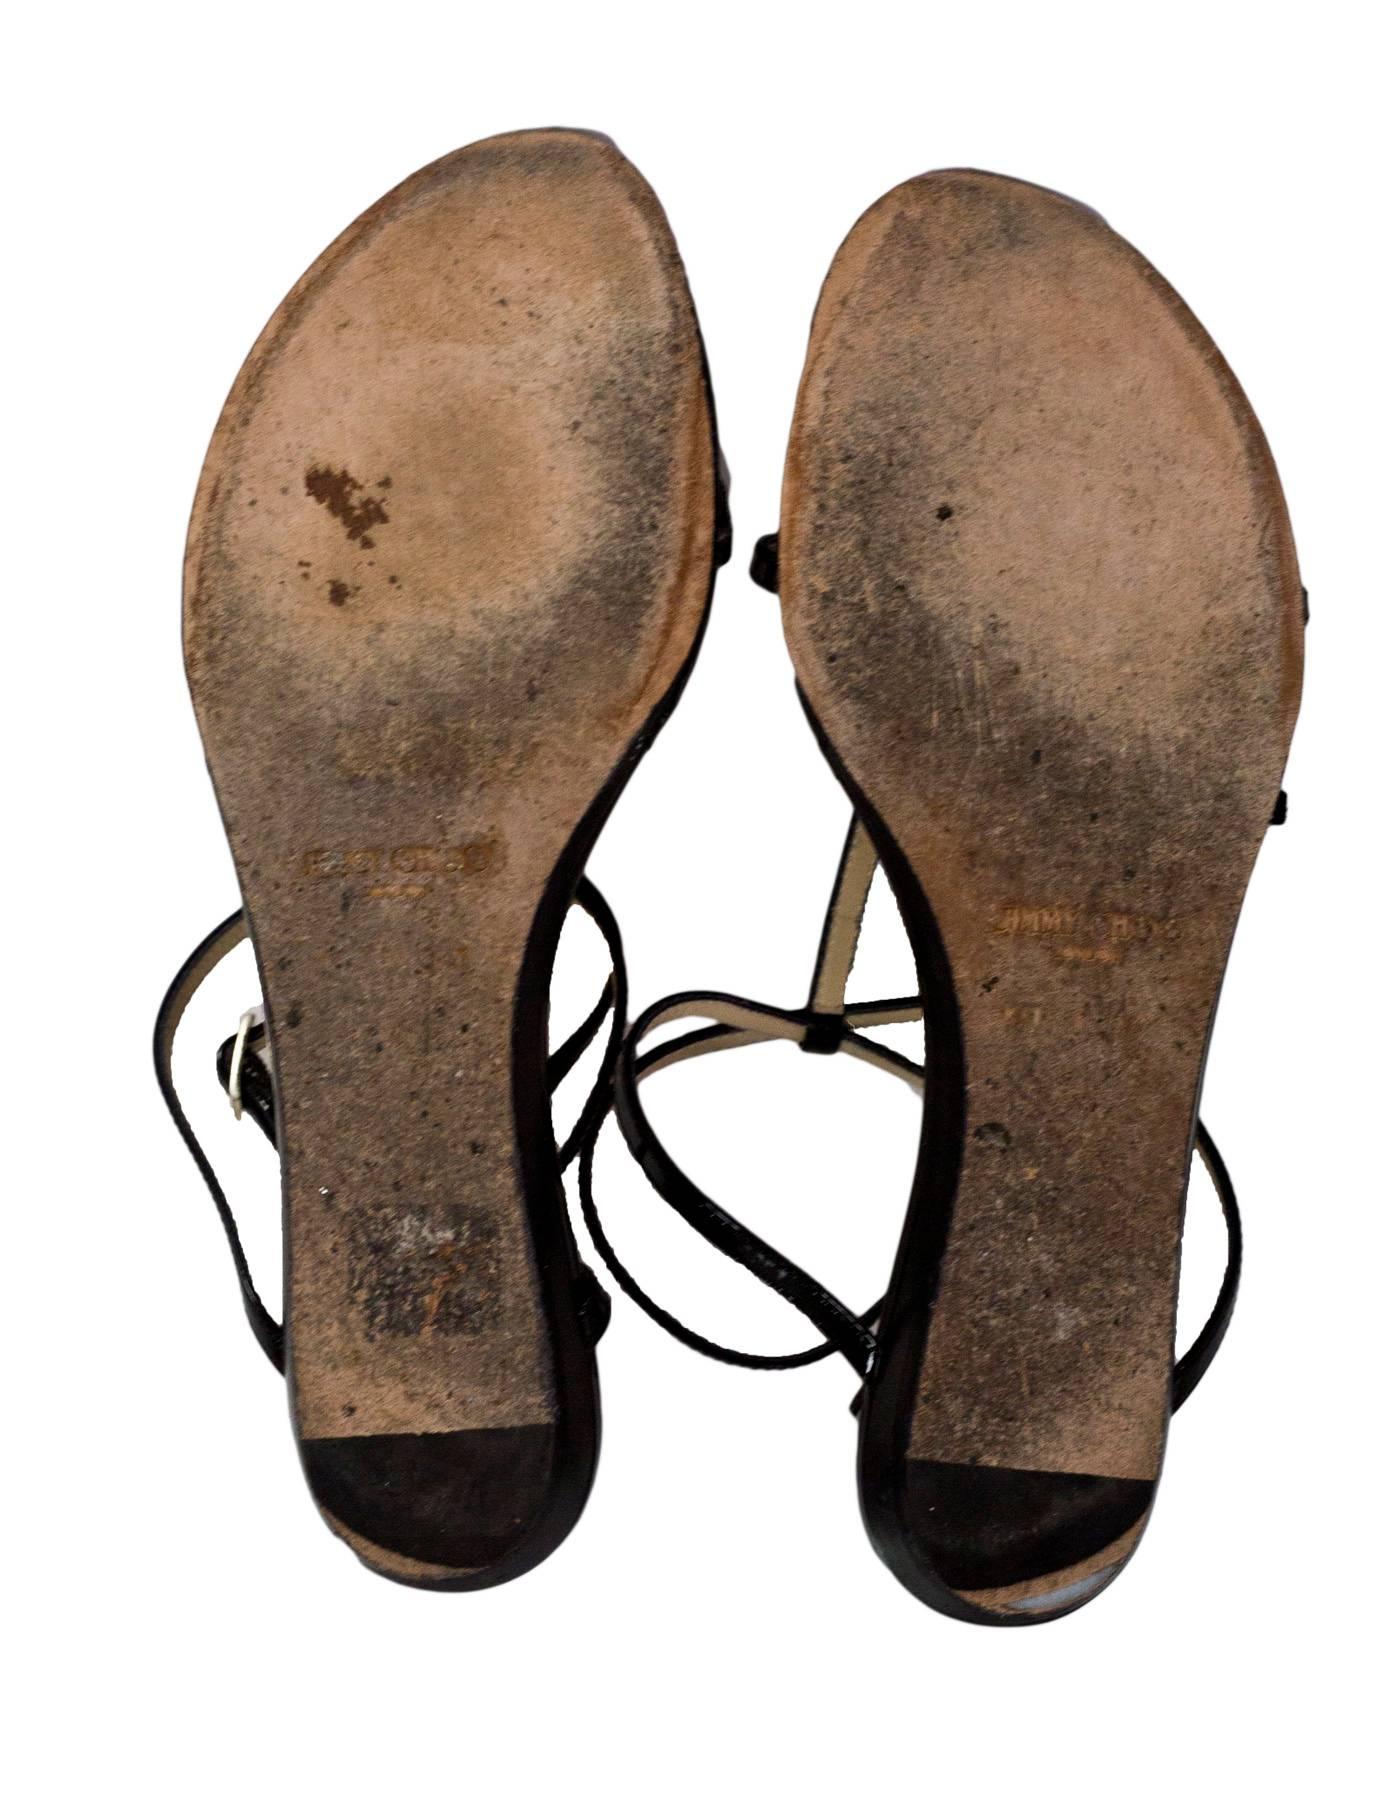 Jimmy Choo Black Patent T-Strap Sandals Sz 36 1